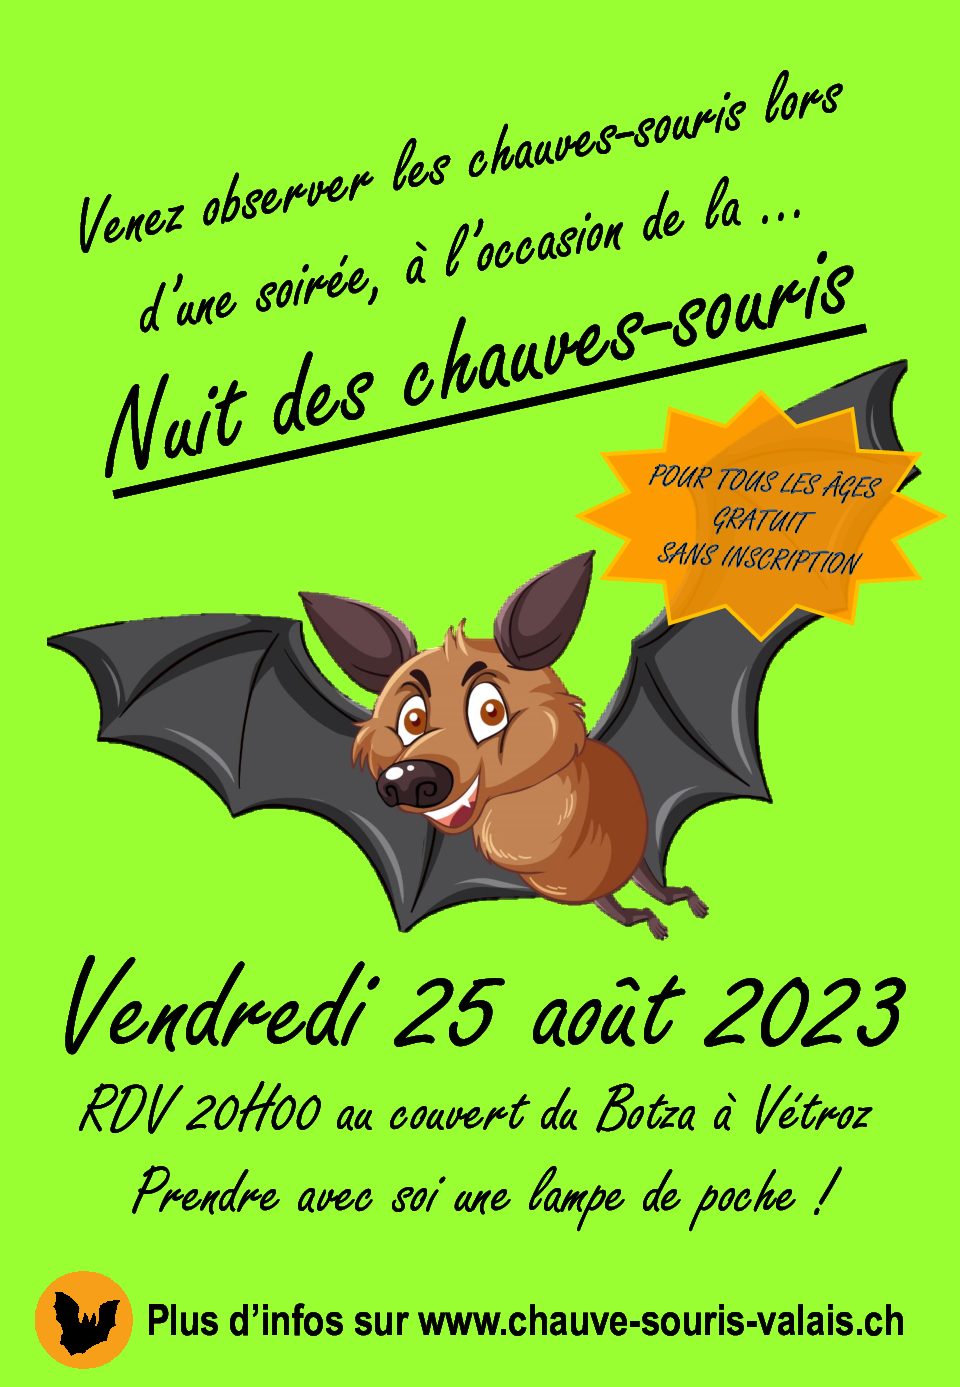 Nuit des Chauves-souris 2023-Evenement public (gratuit et sans inscription)